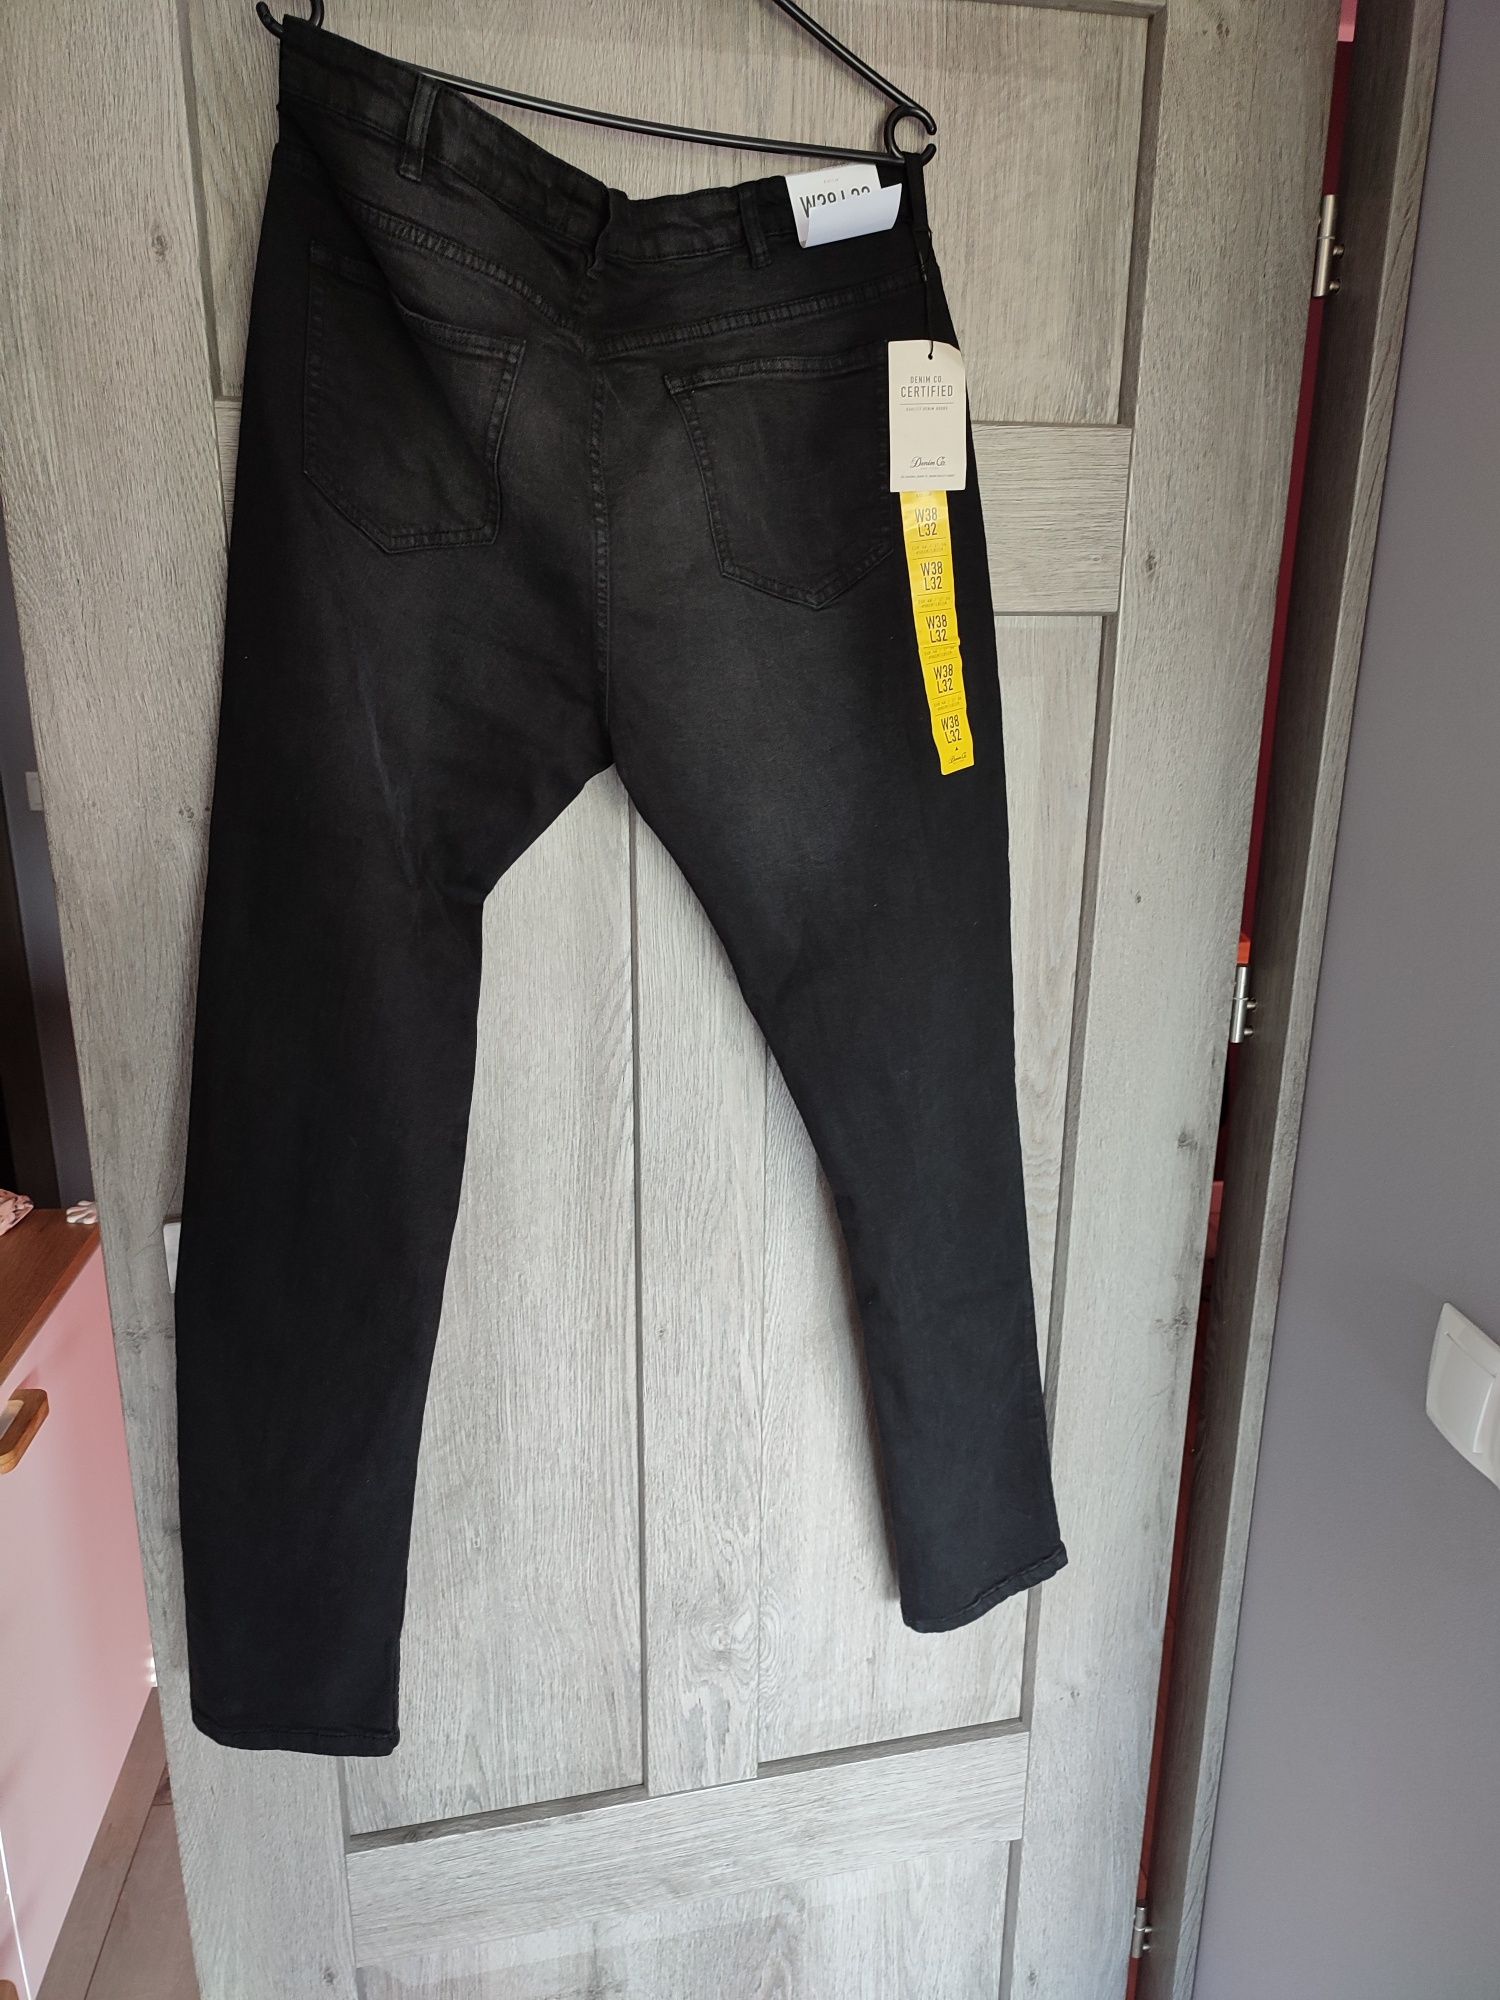 Spodnie jeansy męskie czarne nowe z metką Denim c.o rozmiar 38/32